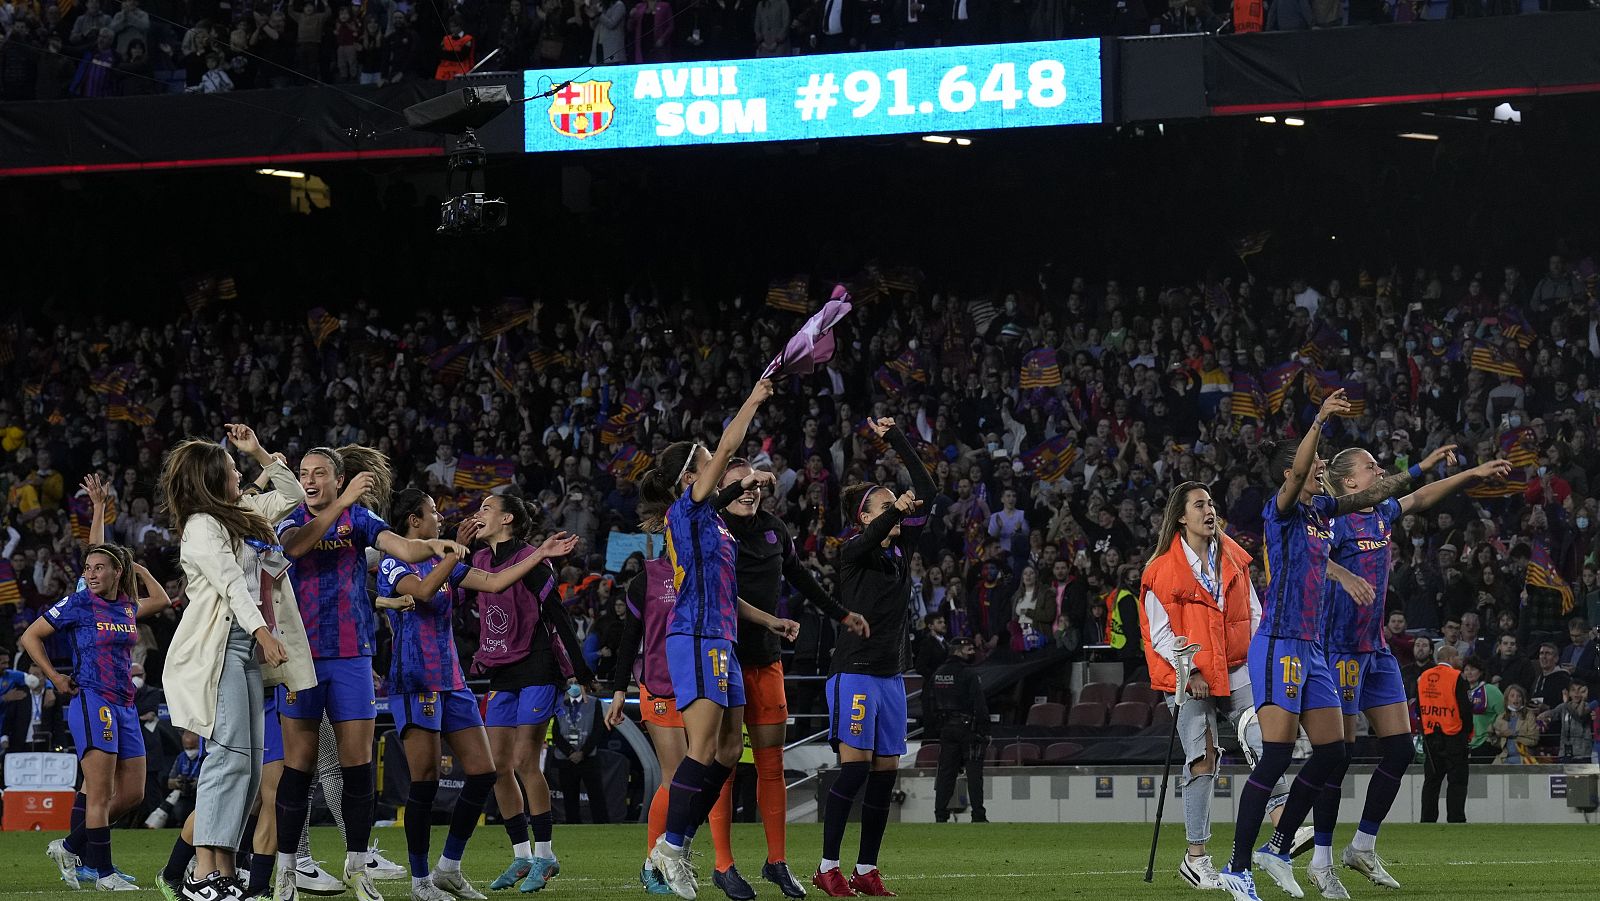 El Barcelona femenino repite record de asistencia: 91.648 espectadores